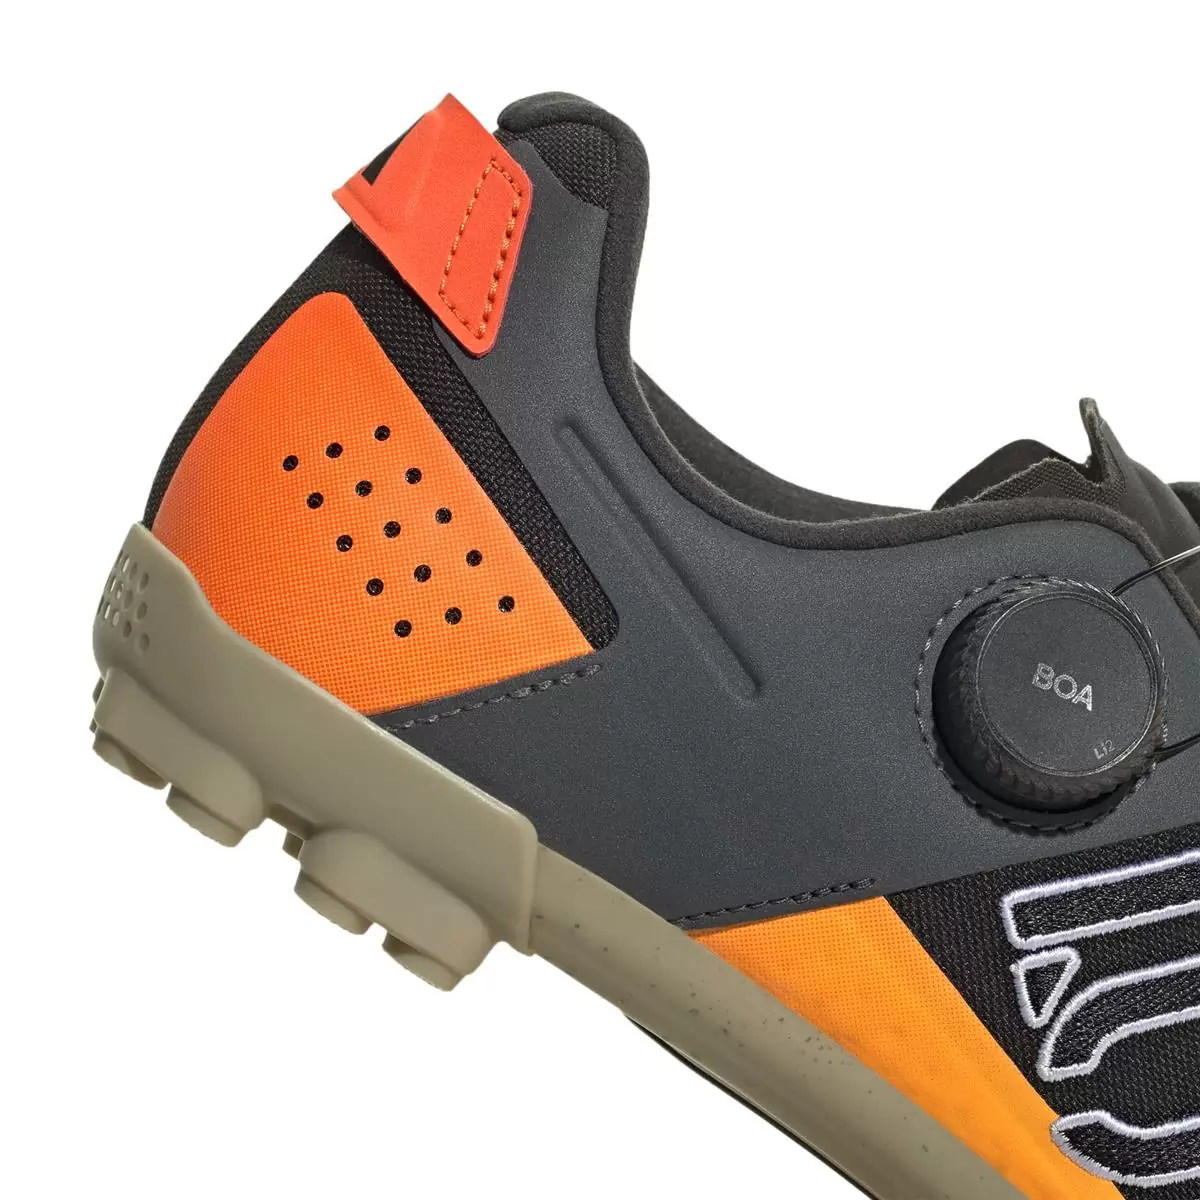 Clip 5.10 Kestrel Boa MTB Shoes Black/Orange Size 44.5 #7